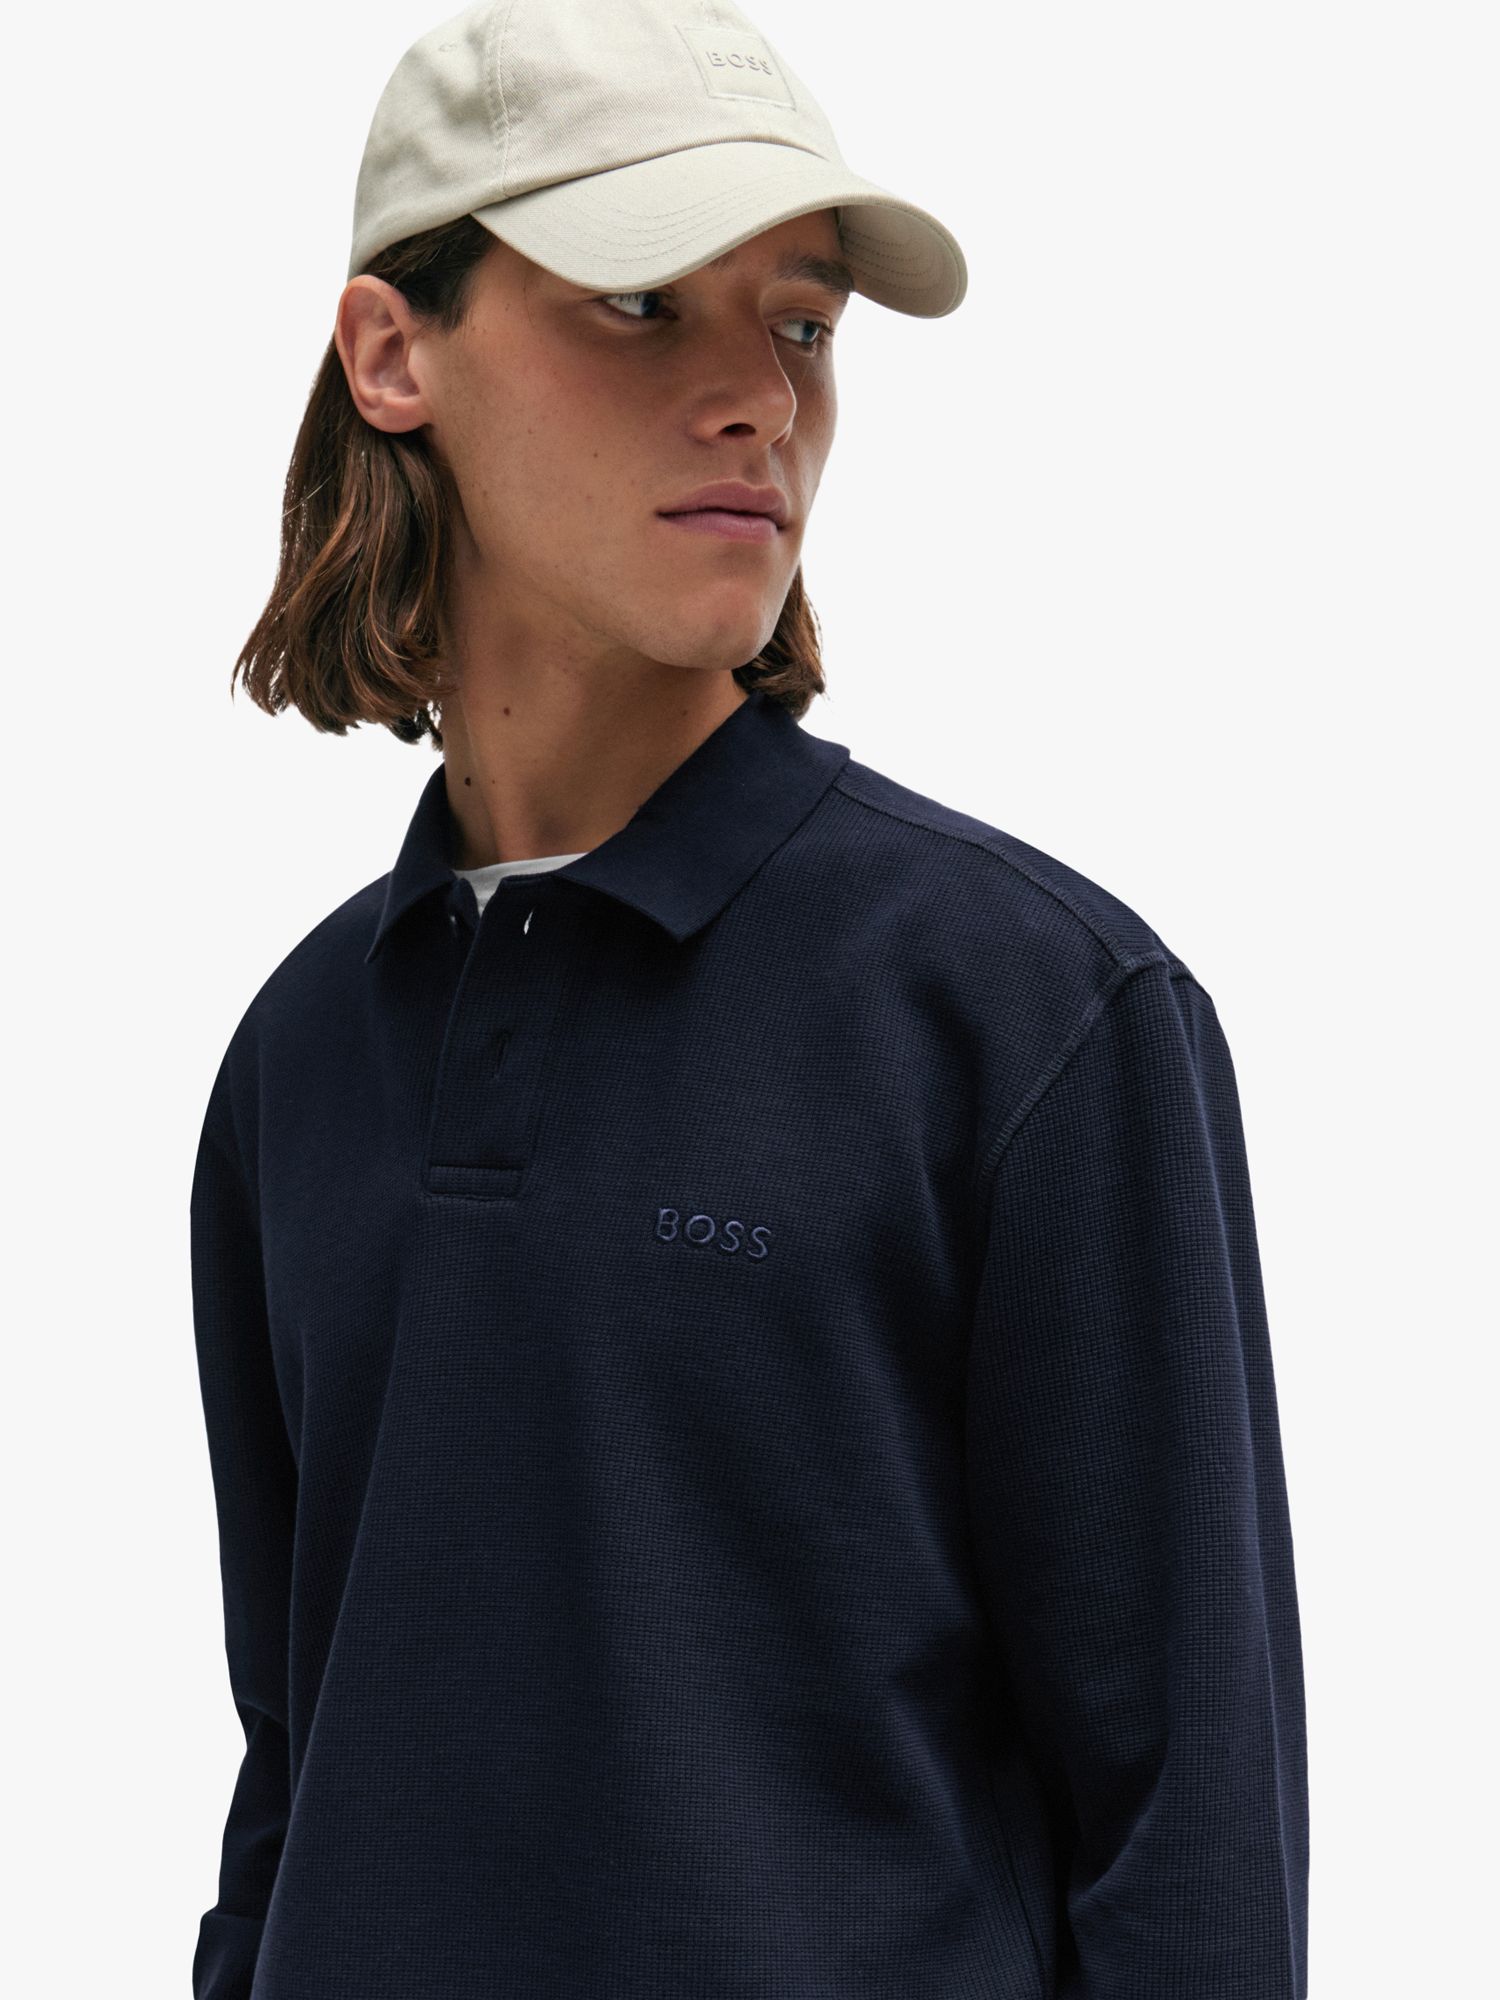 BOSS Long Sleeved Polo Shirt, Dark Blue, XXXL